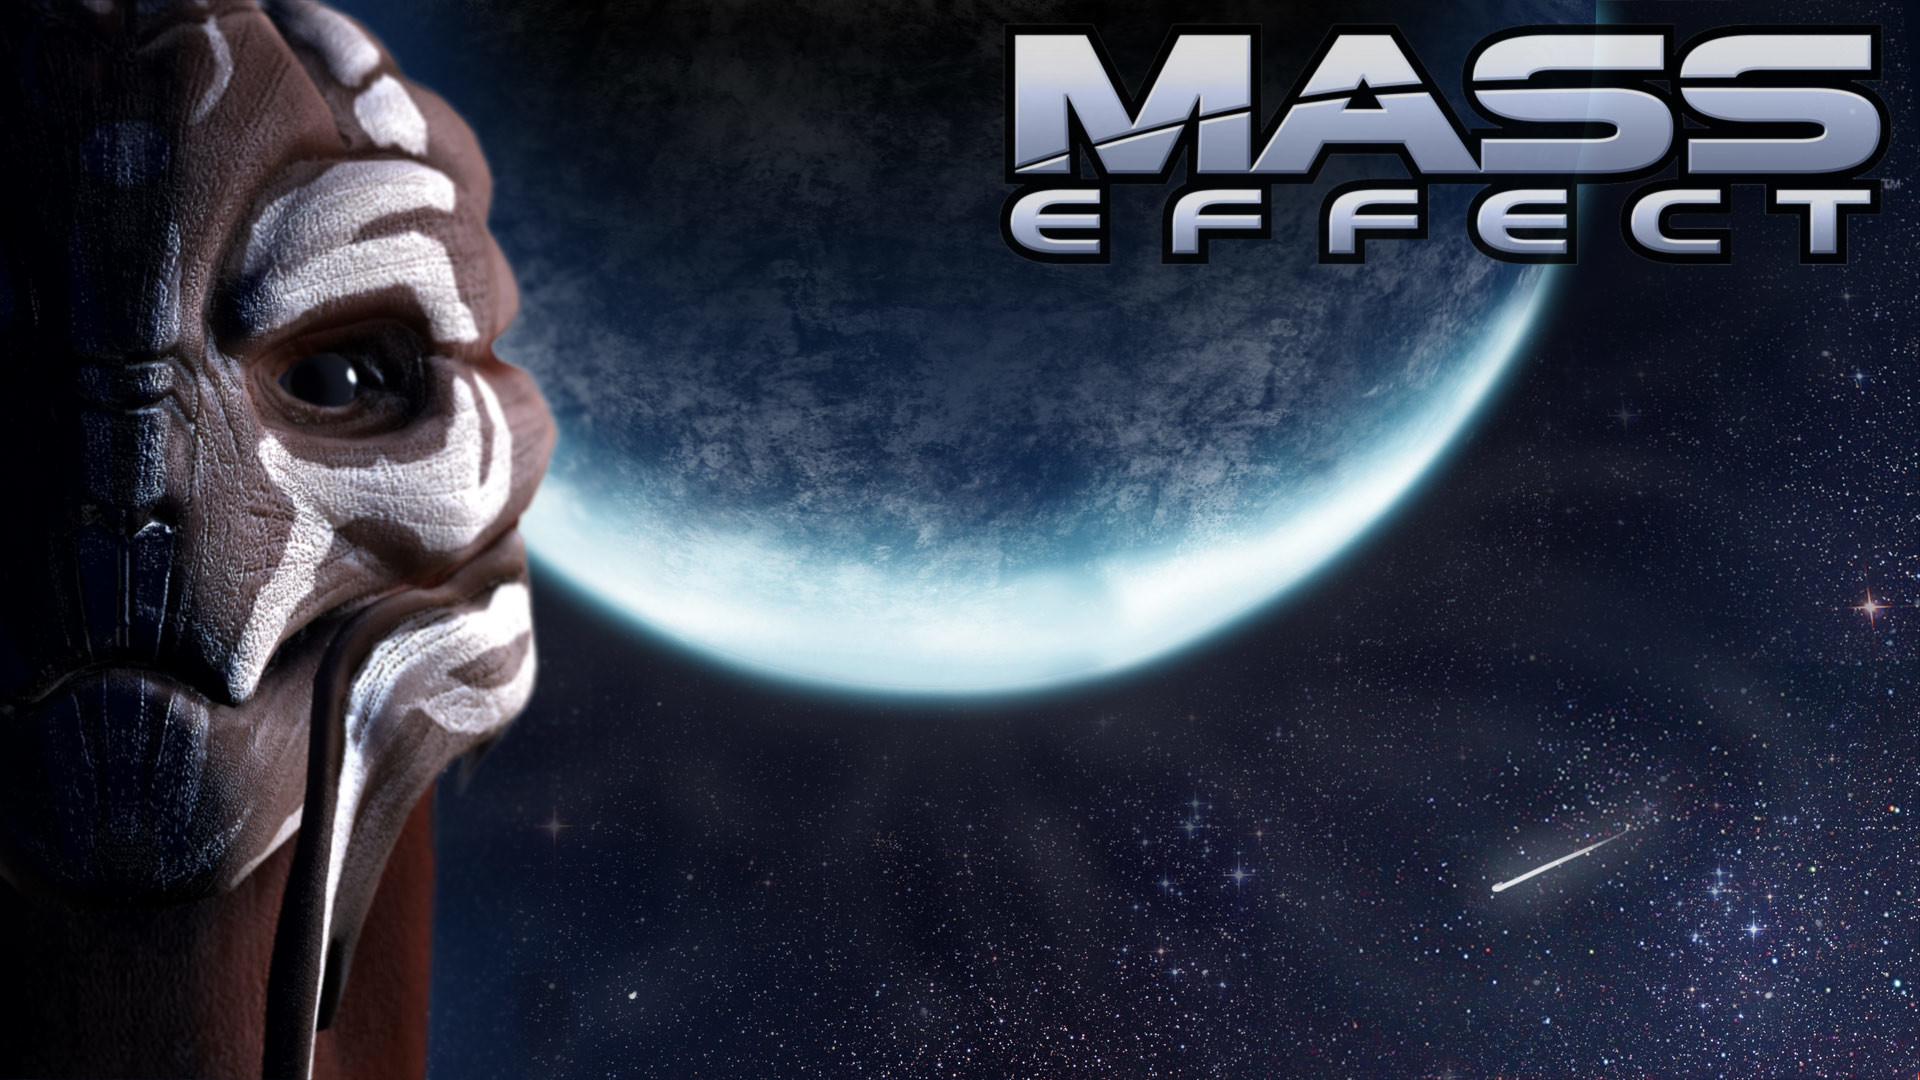 1920x1080 Download Mass Effect Garrus Vakarian Wallpaper For iPhone | HD Wallpapers |  Pinterest | Hd wallpaper and Wallpaper